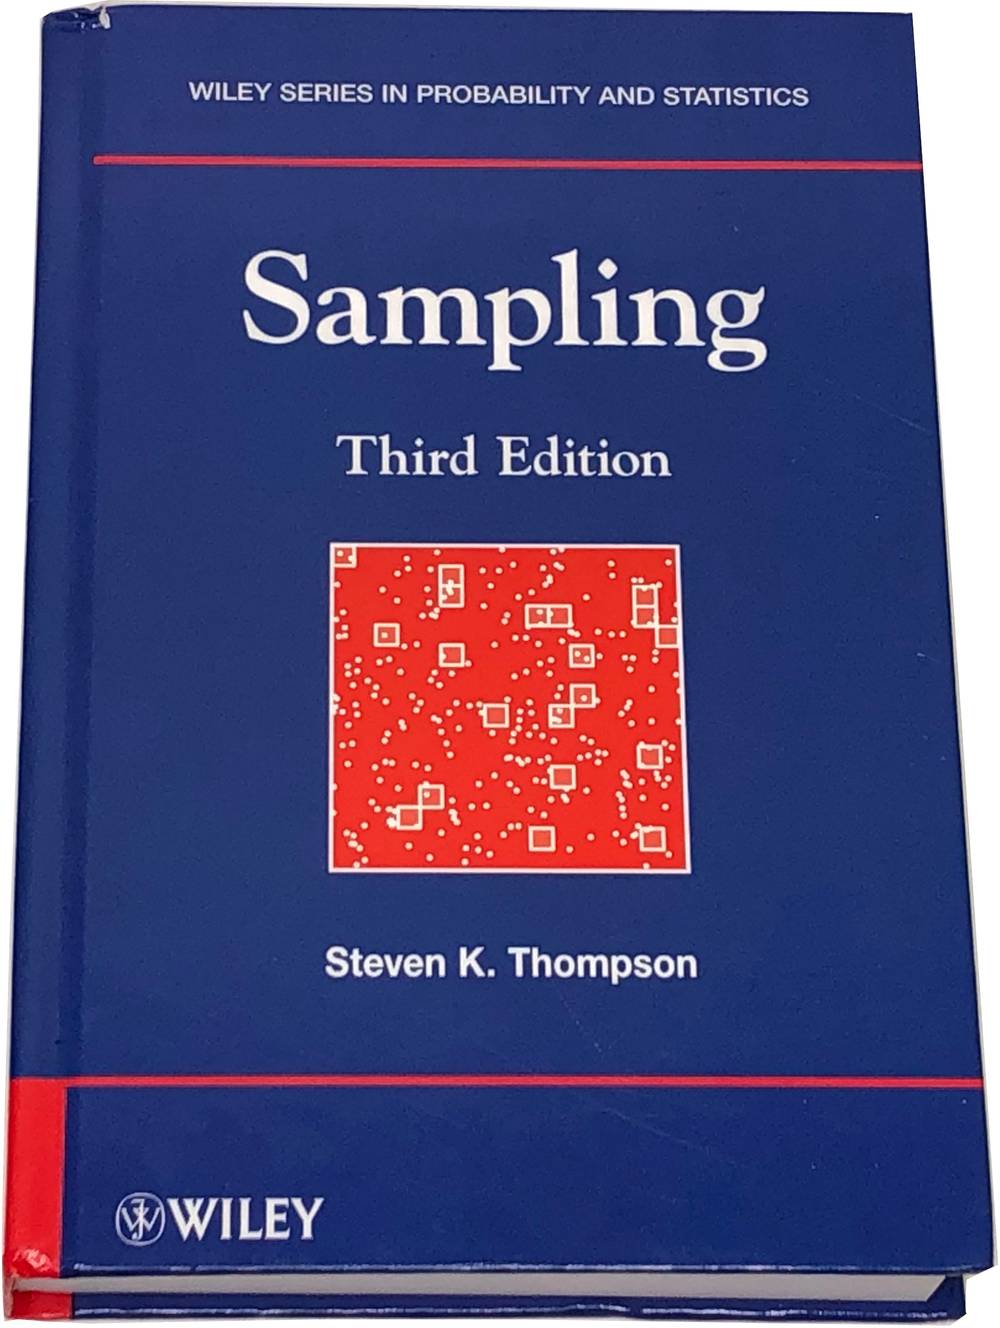 Book image of Sampling.